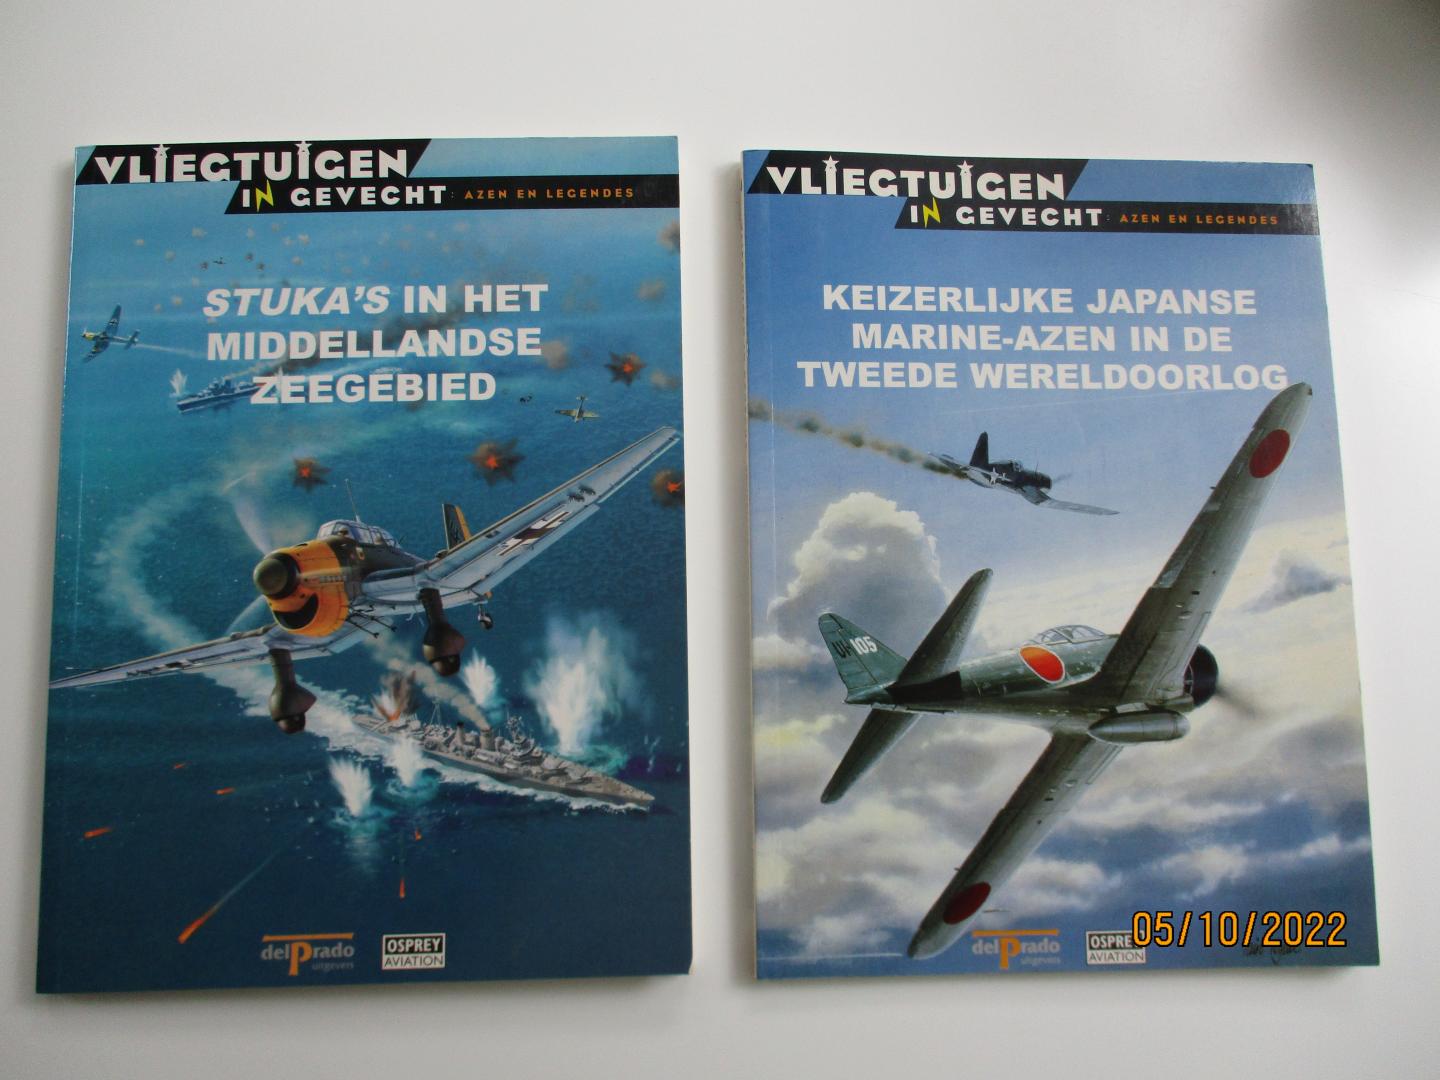 Janet van der Lee (redactie) - Serie Vliegtuigen in gevecht / Azen en legendes. Delen 2-4-6-7-8-9-12-21-22-35-43-44-47 en 48